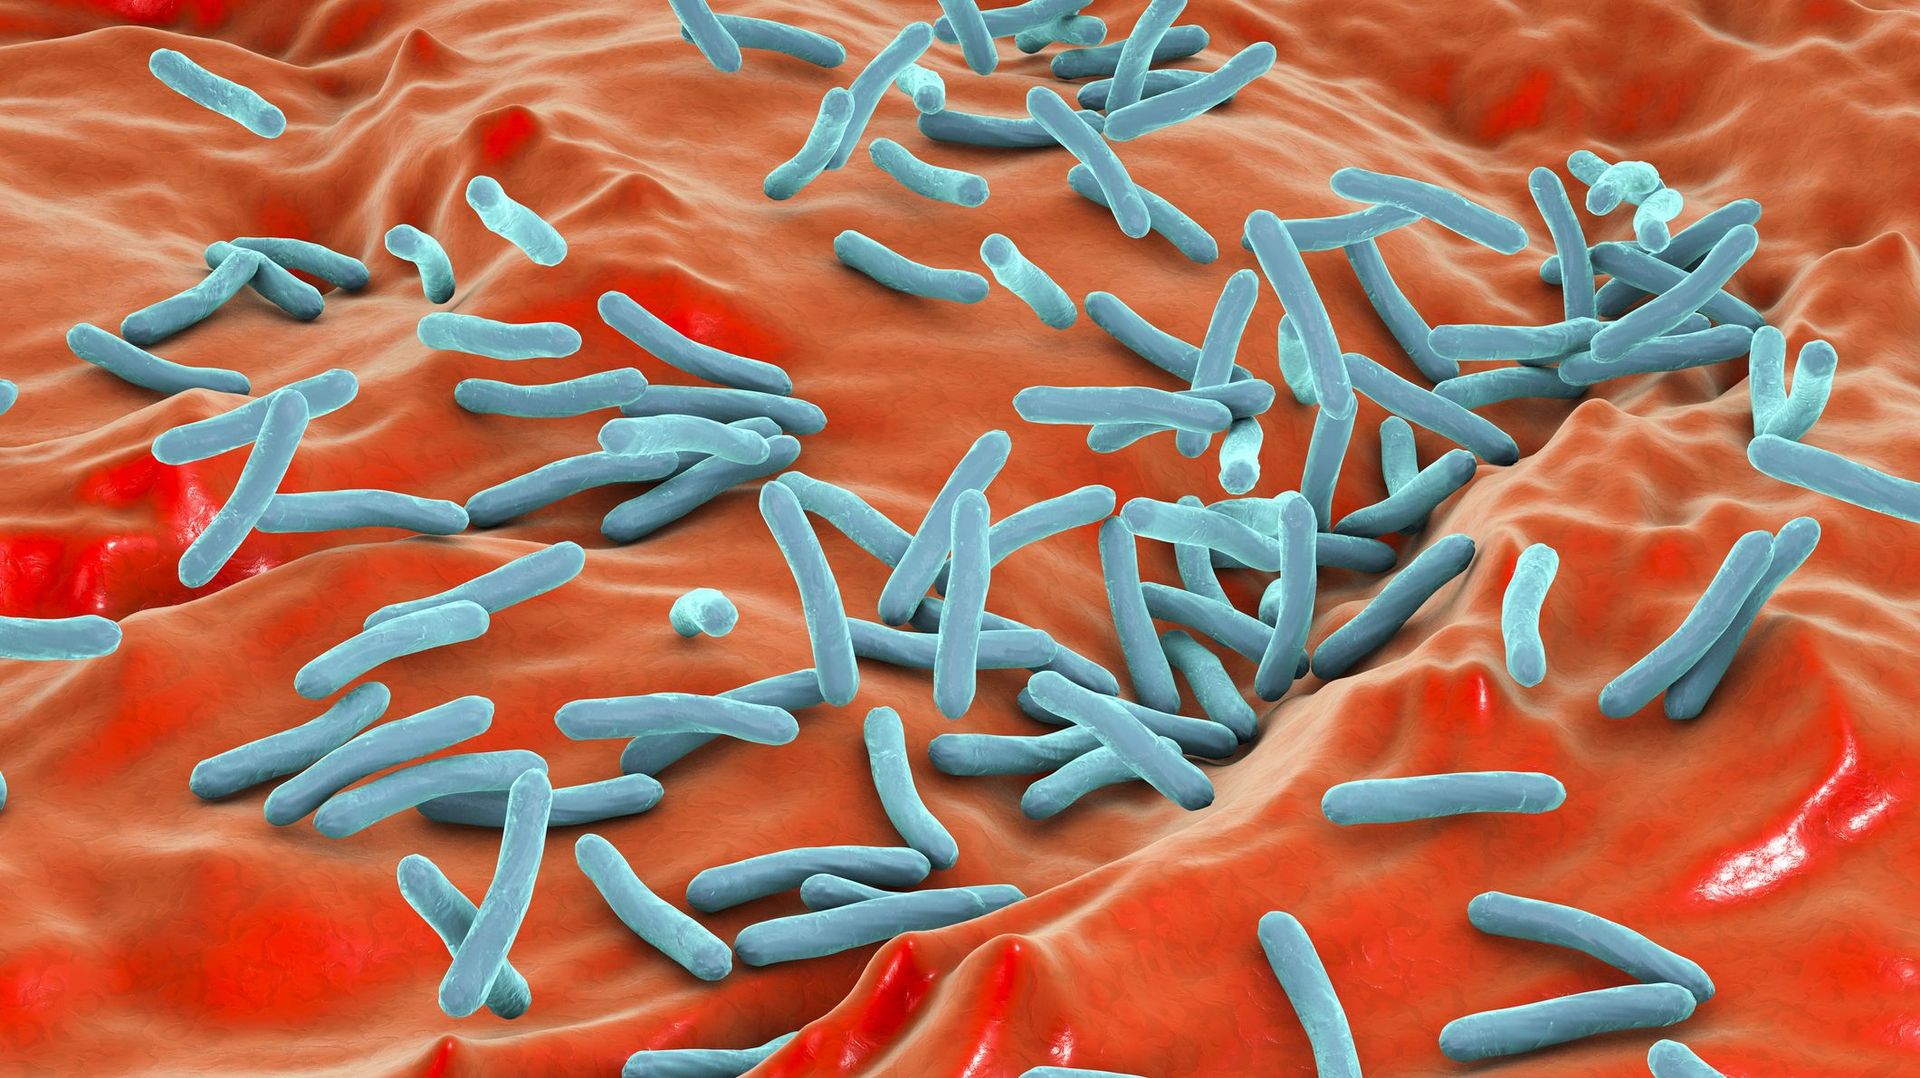 Illustration de la bactérie mycobacterium tuberculosis à l'origine de la tuberculose. 